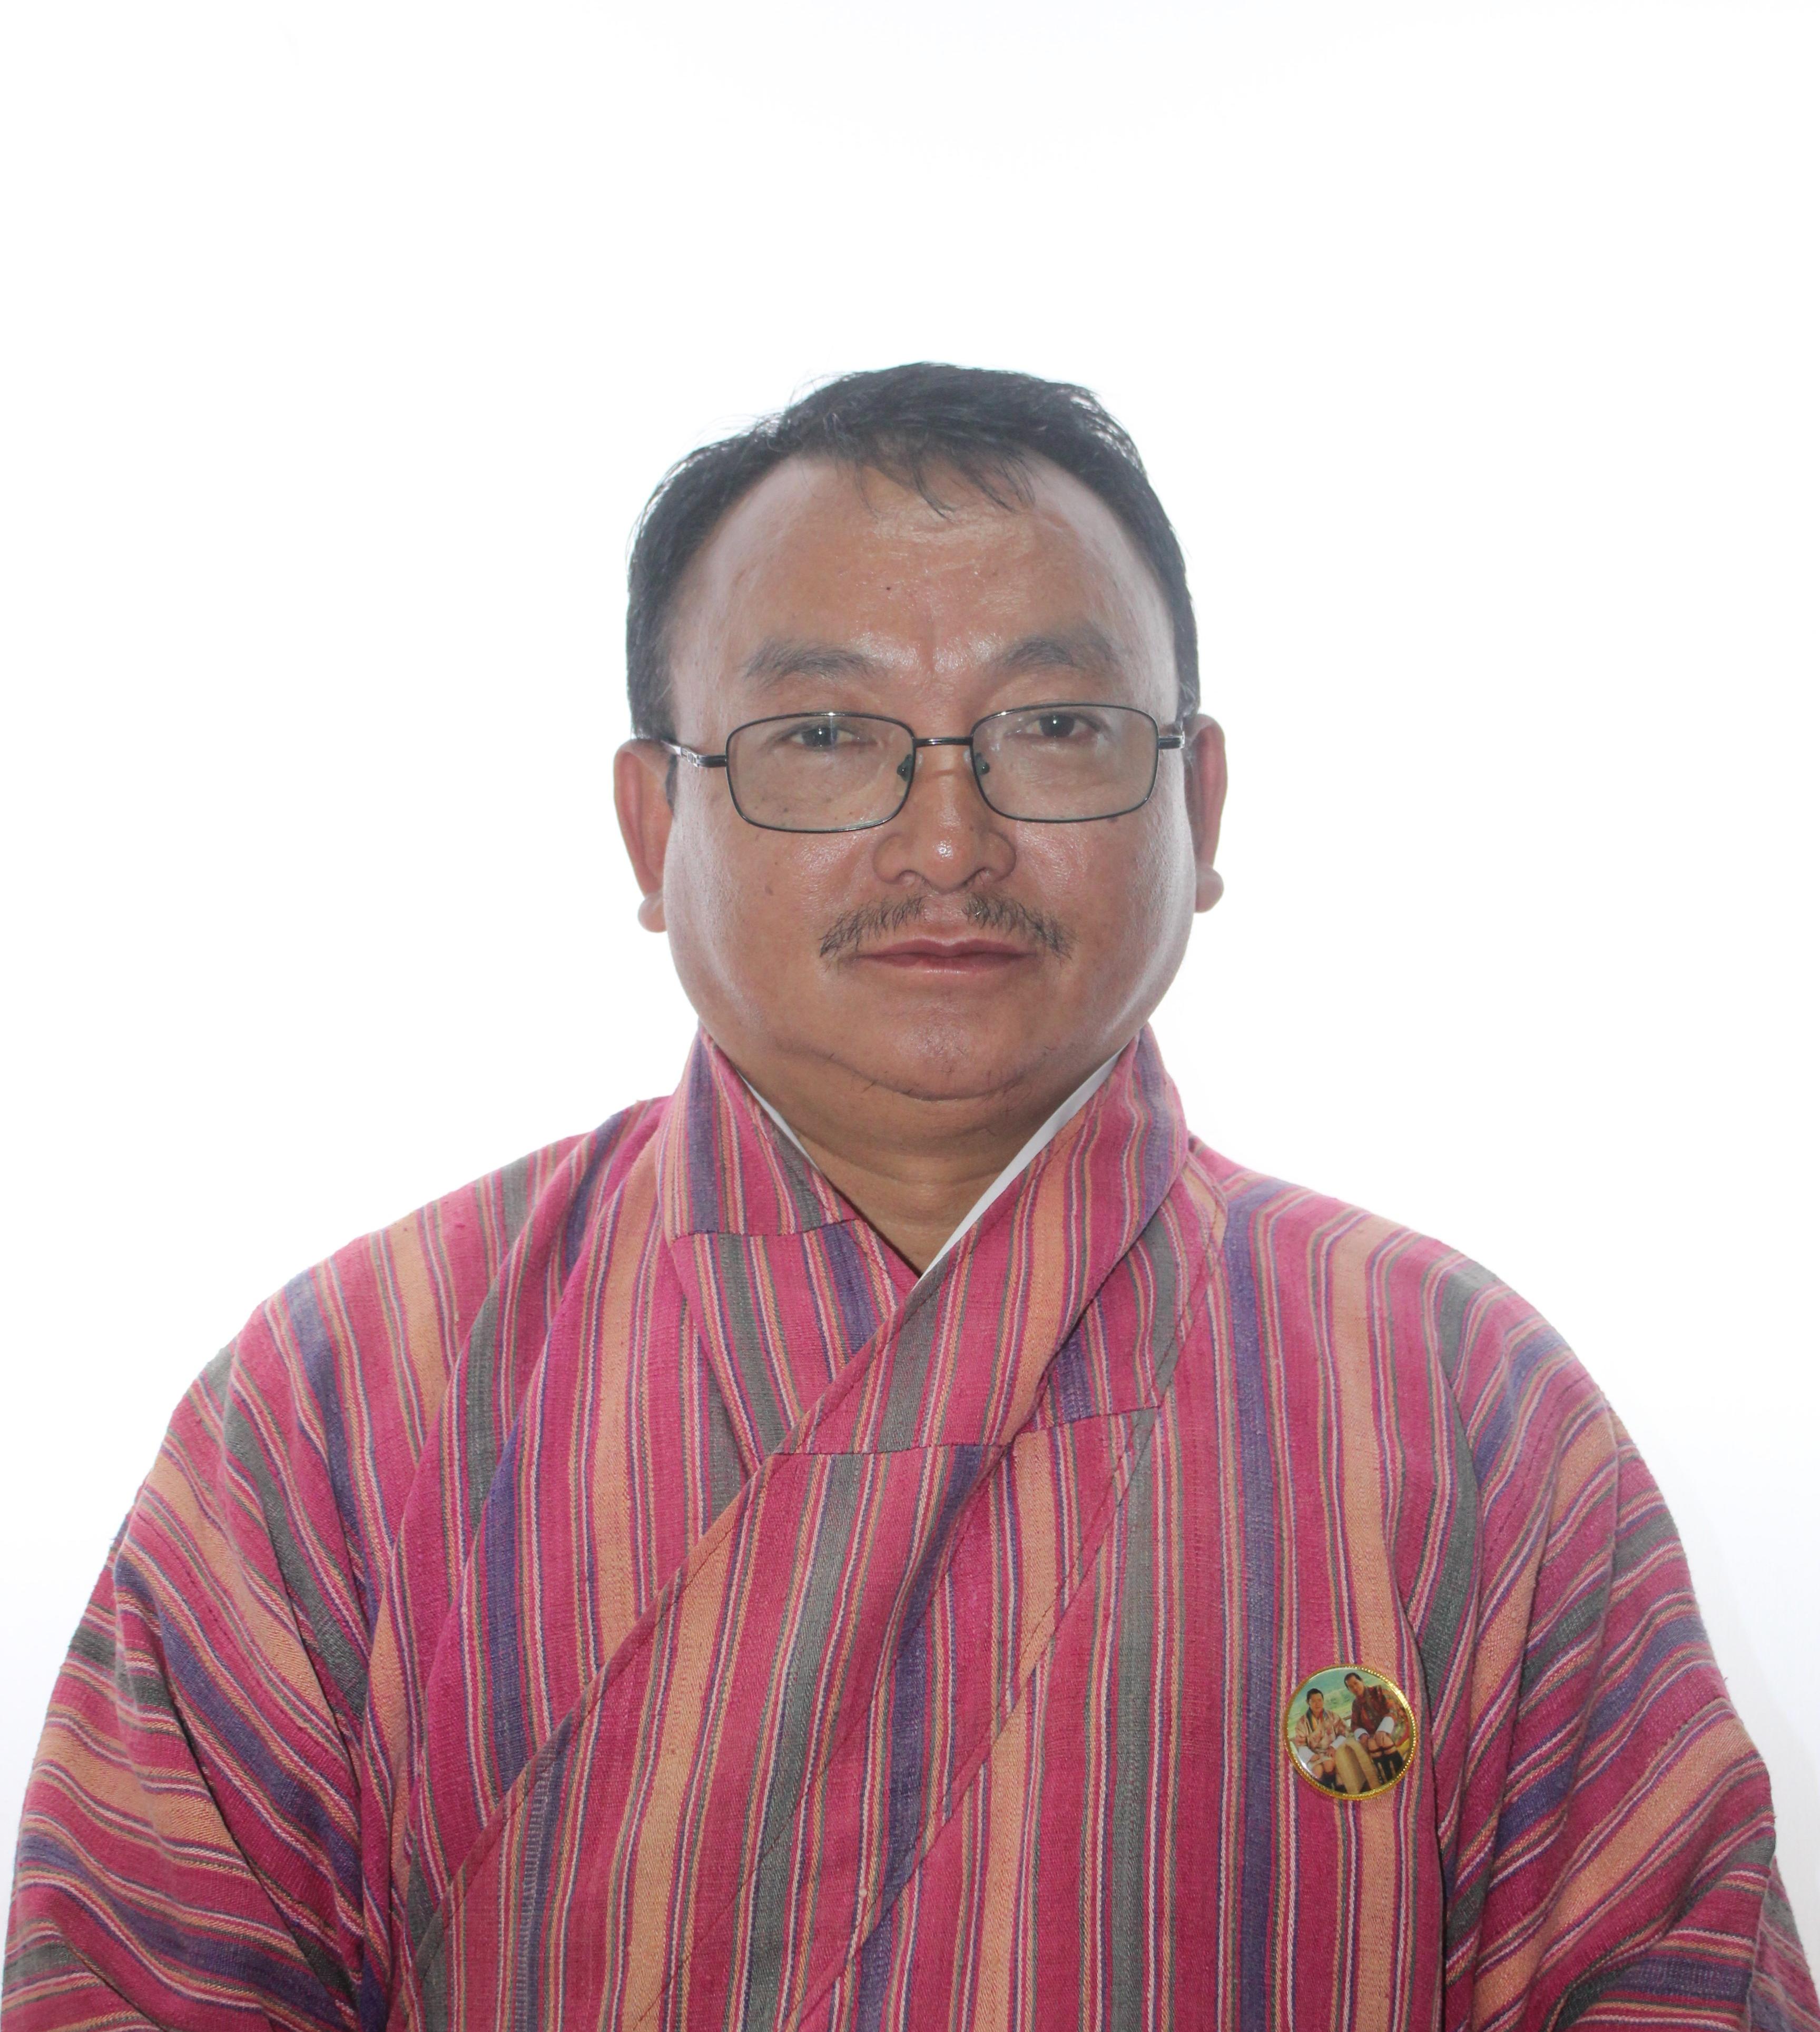 Dzongkhag Census Officer